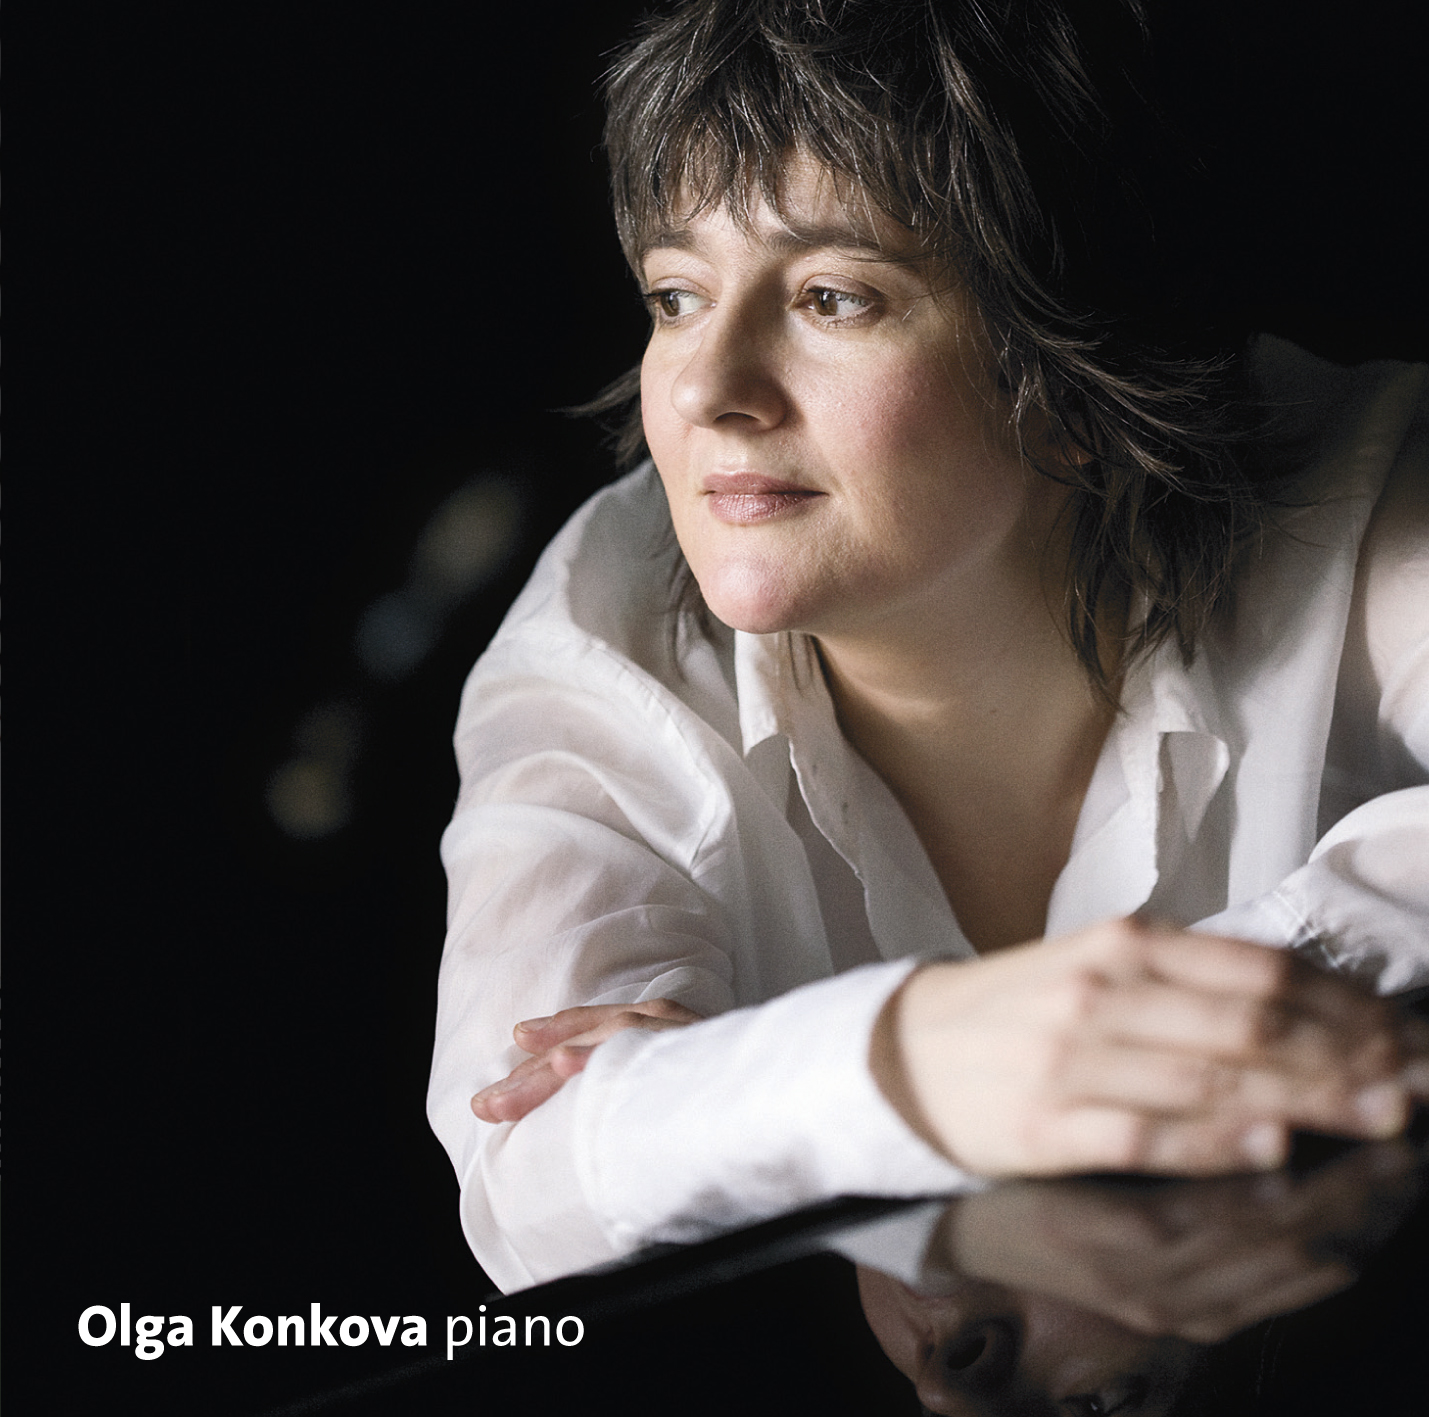 Olga Konkova: Improvisational four